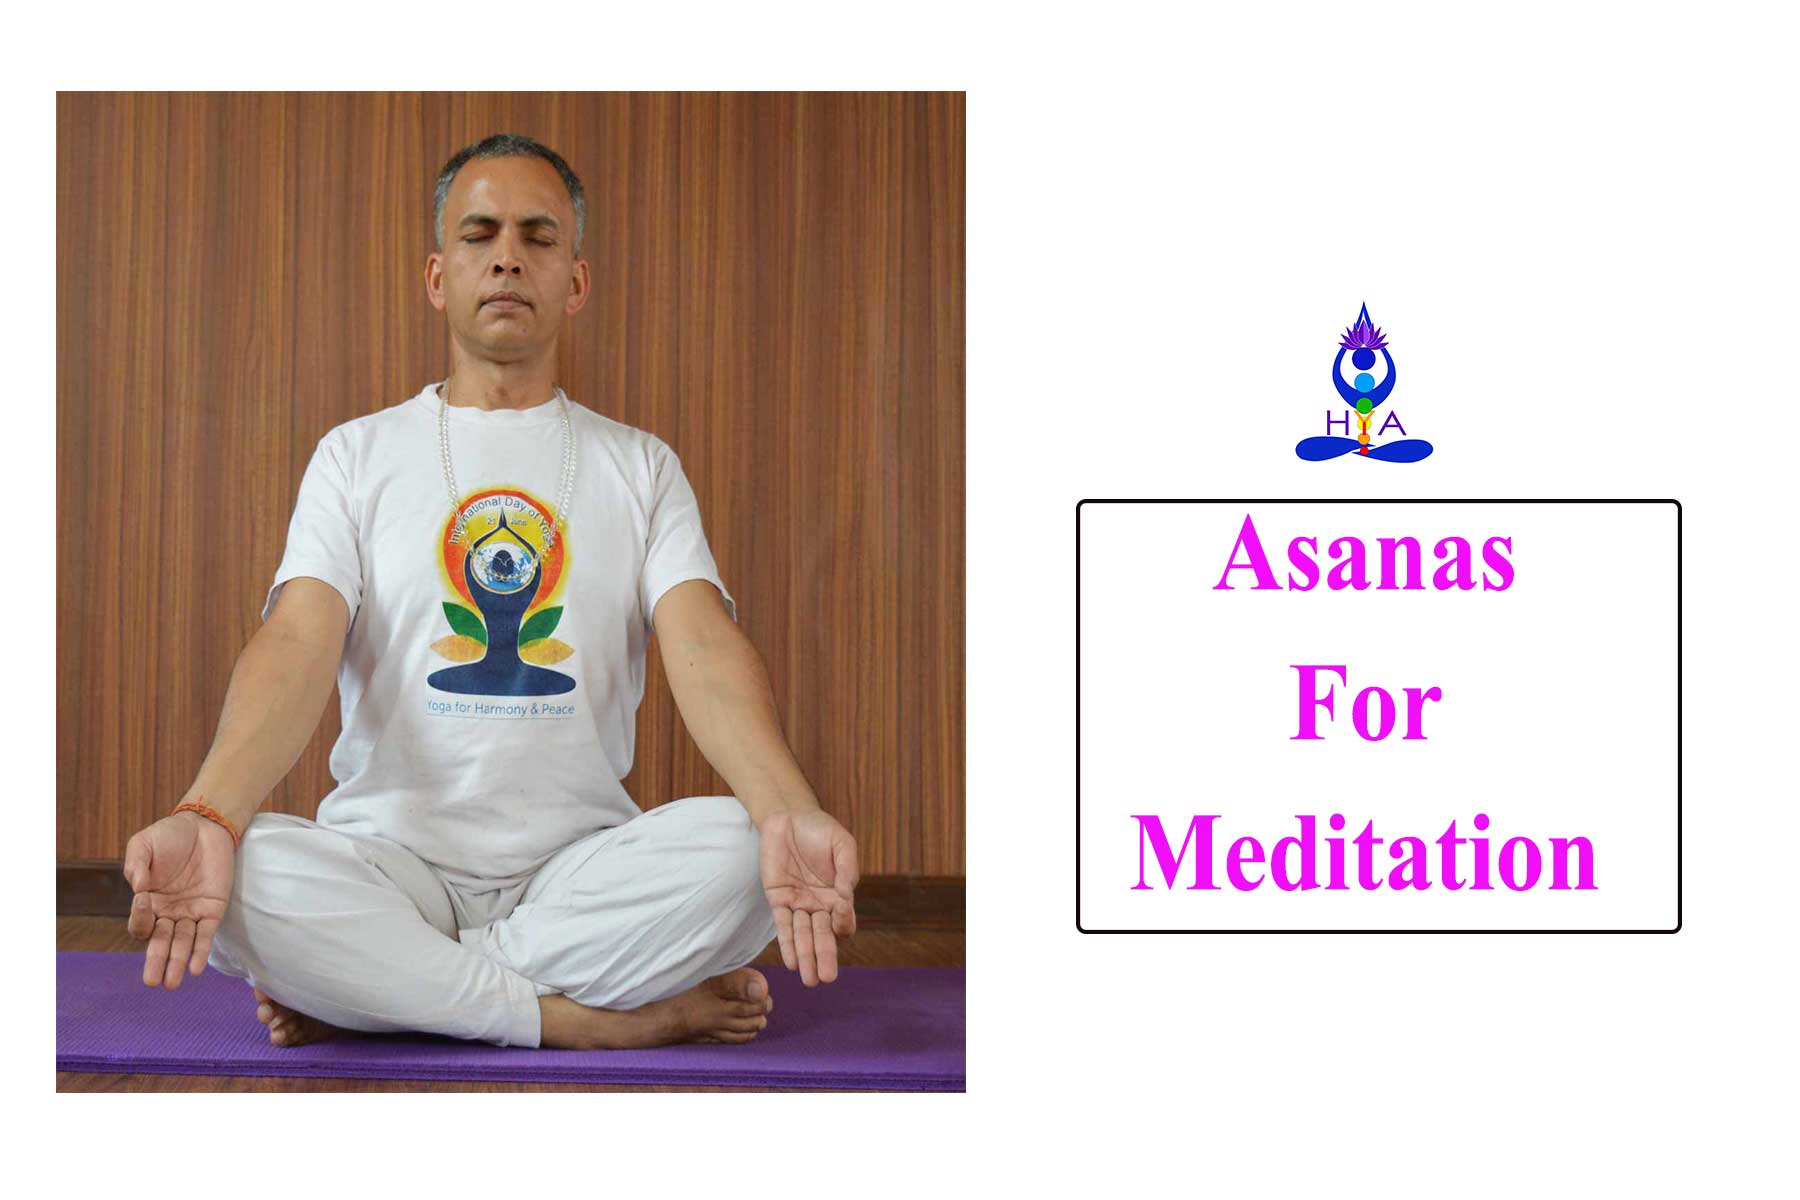 Asanas for Meditation